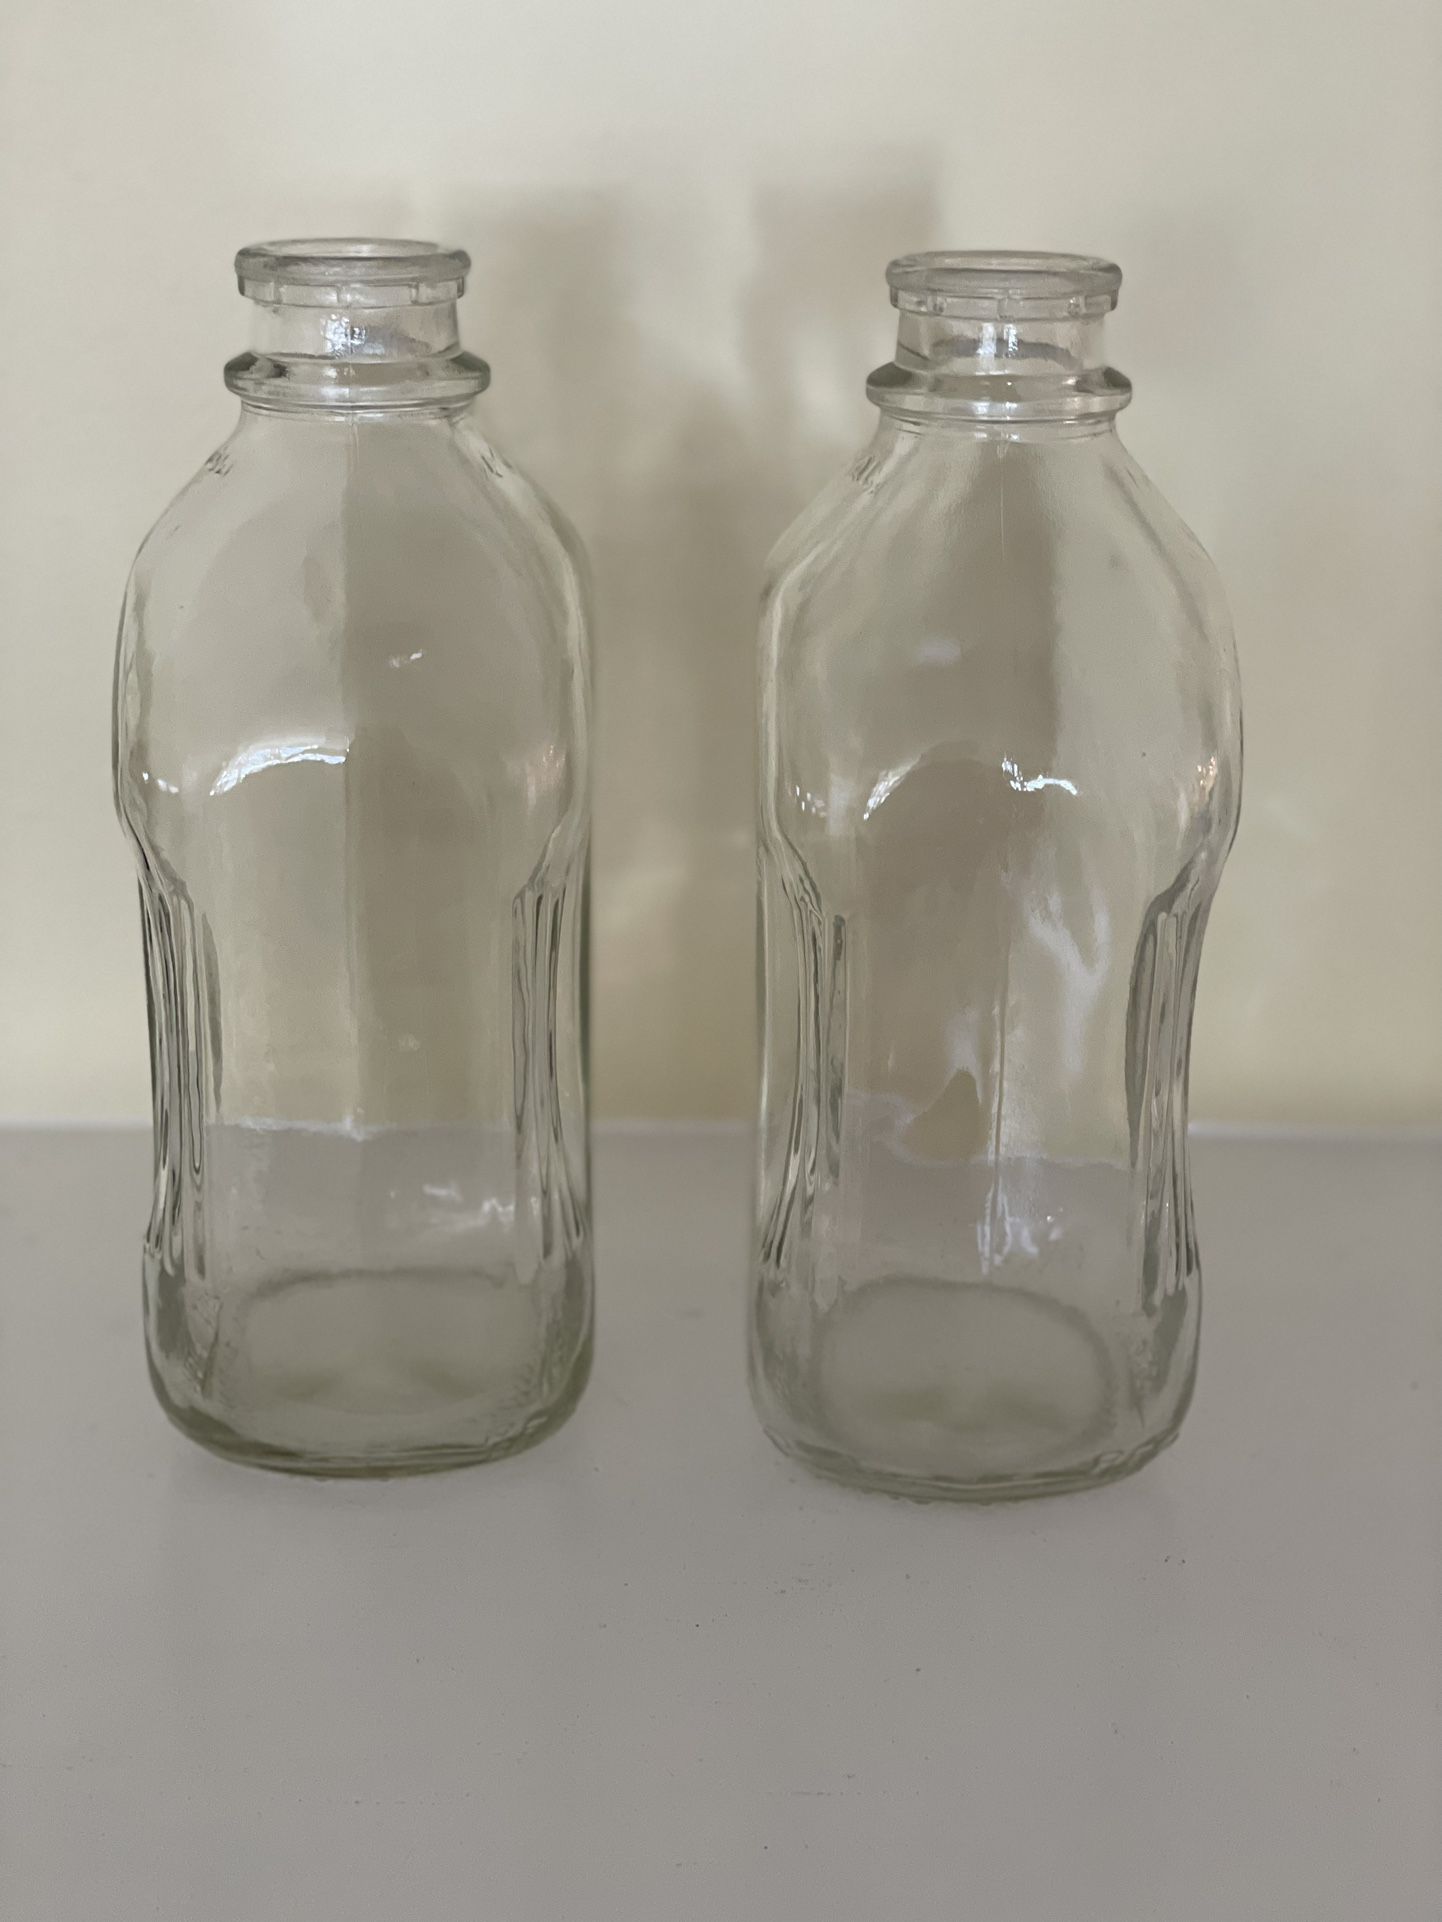 2 Vintage glass milk bottles